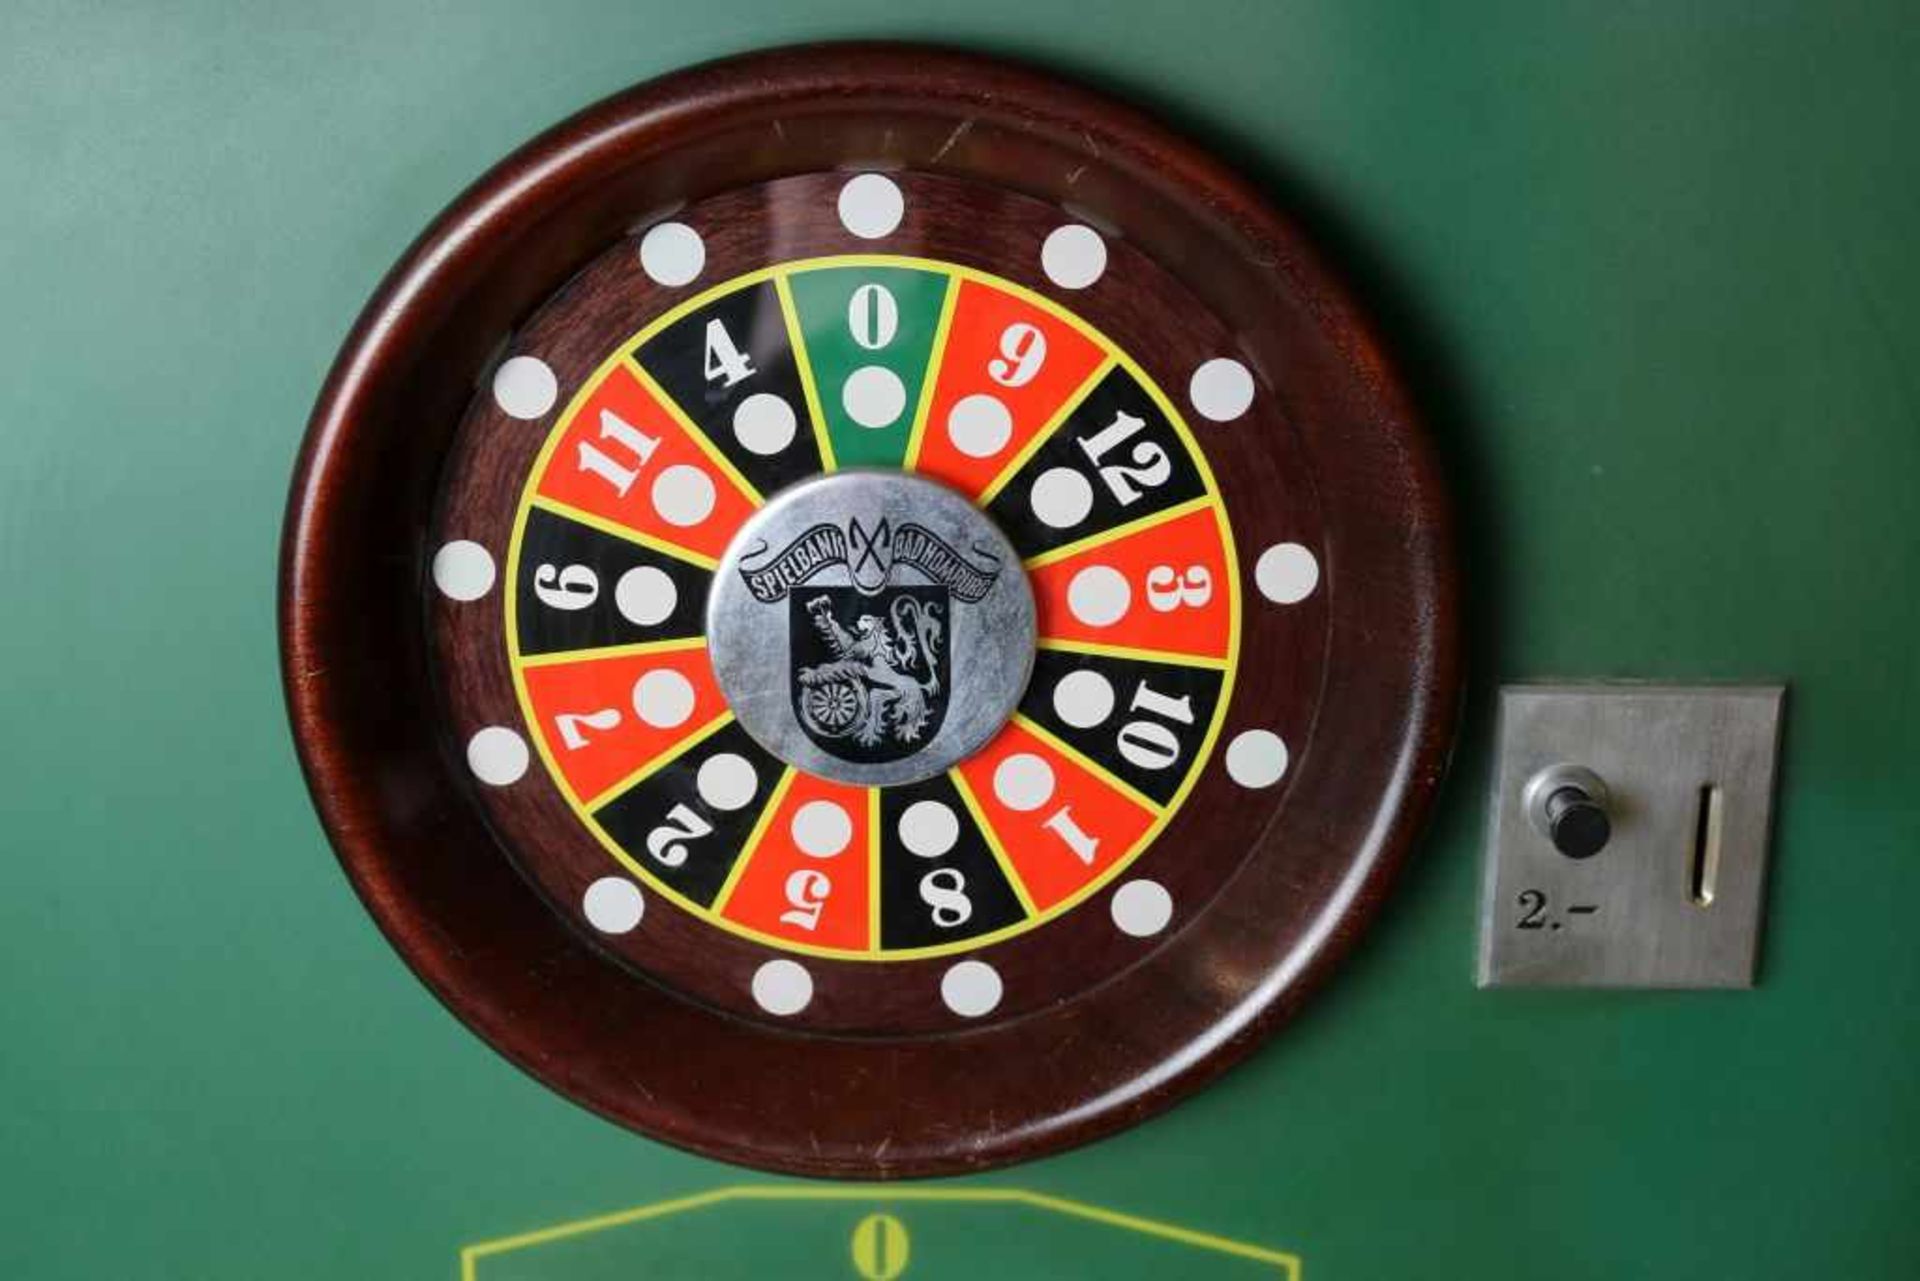 Originaler Casino-Rouletteautomat des Herstellers Polymat. Ursprünglich in der Spielbank Bad Homburg - Bild 2 aus 3